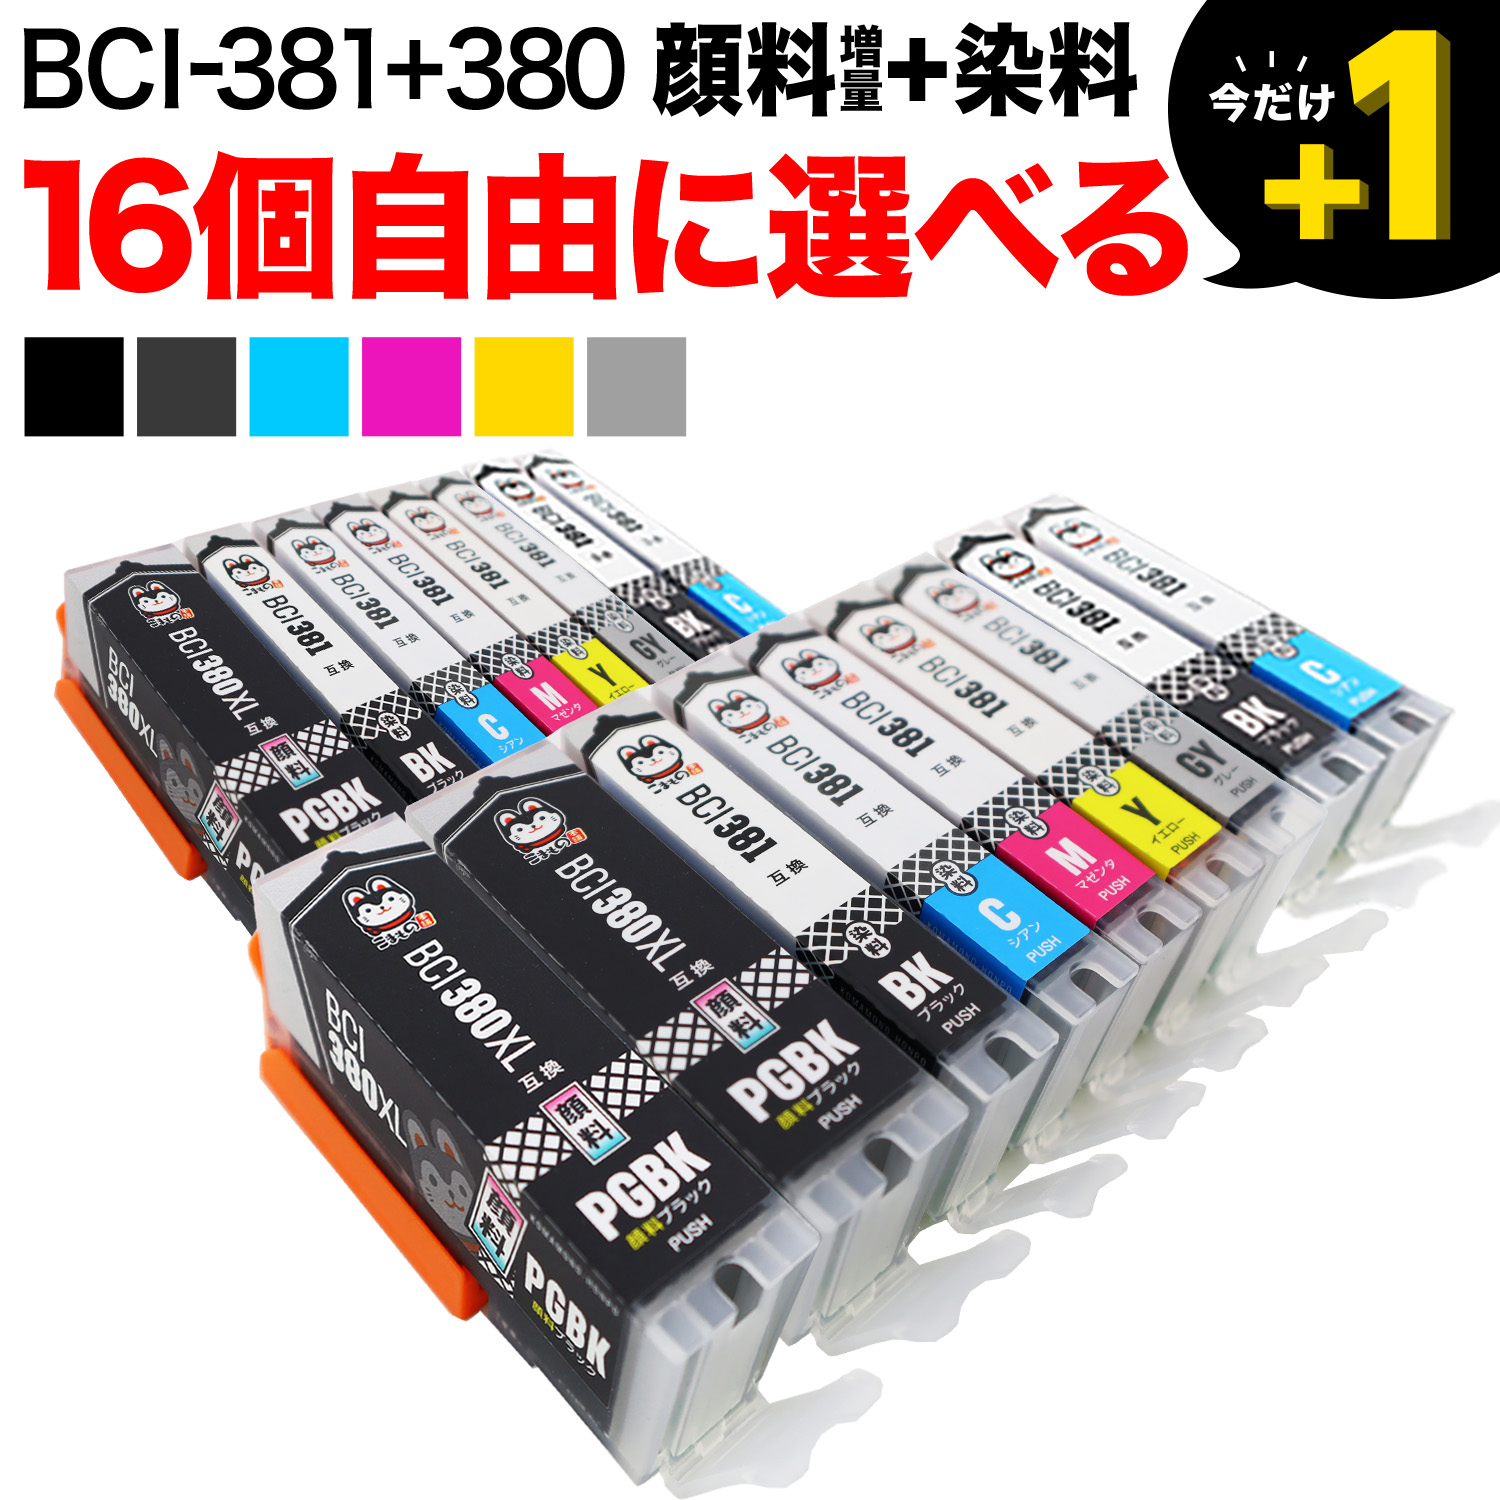 BCI-381+380 キヤノン用 互換インク 自由選択16個セット フリー